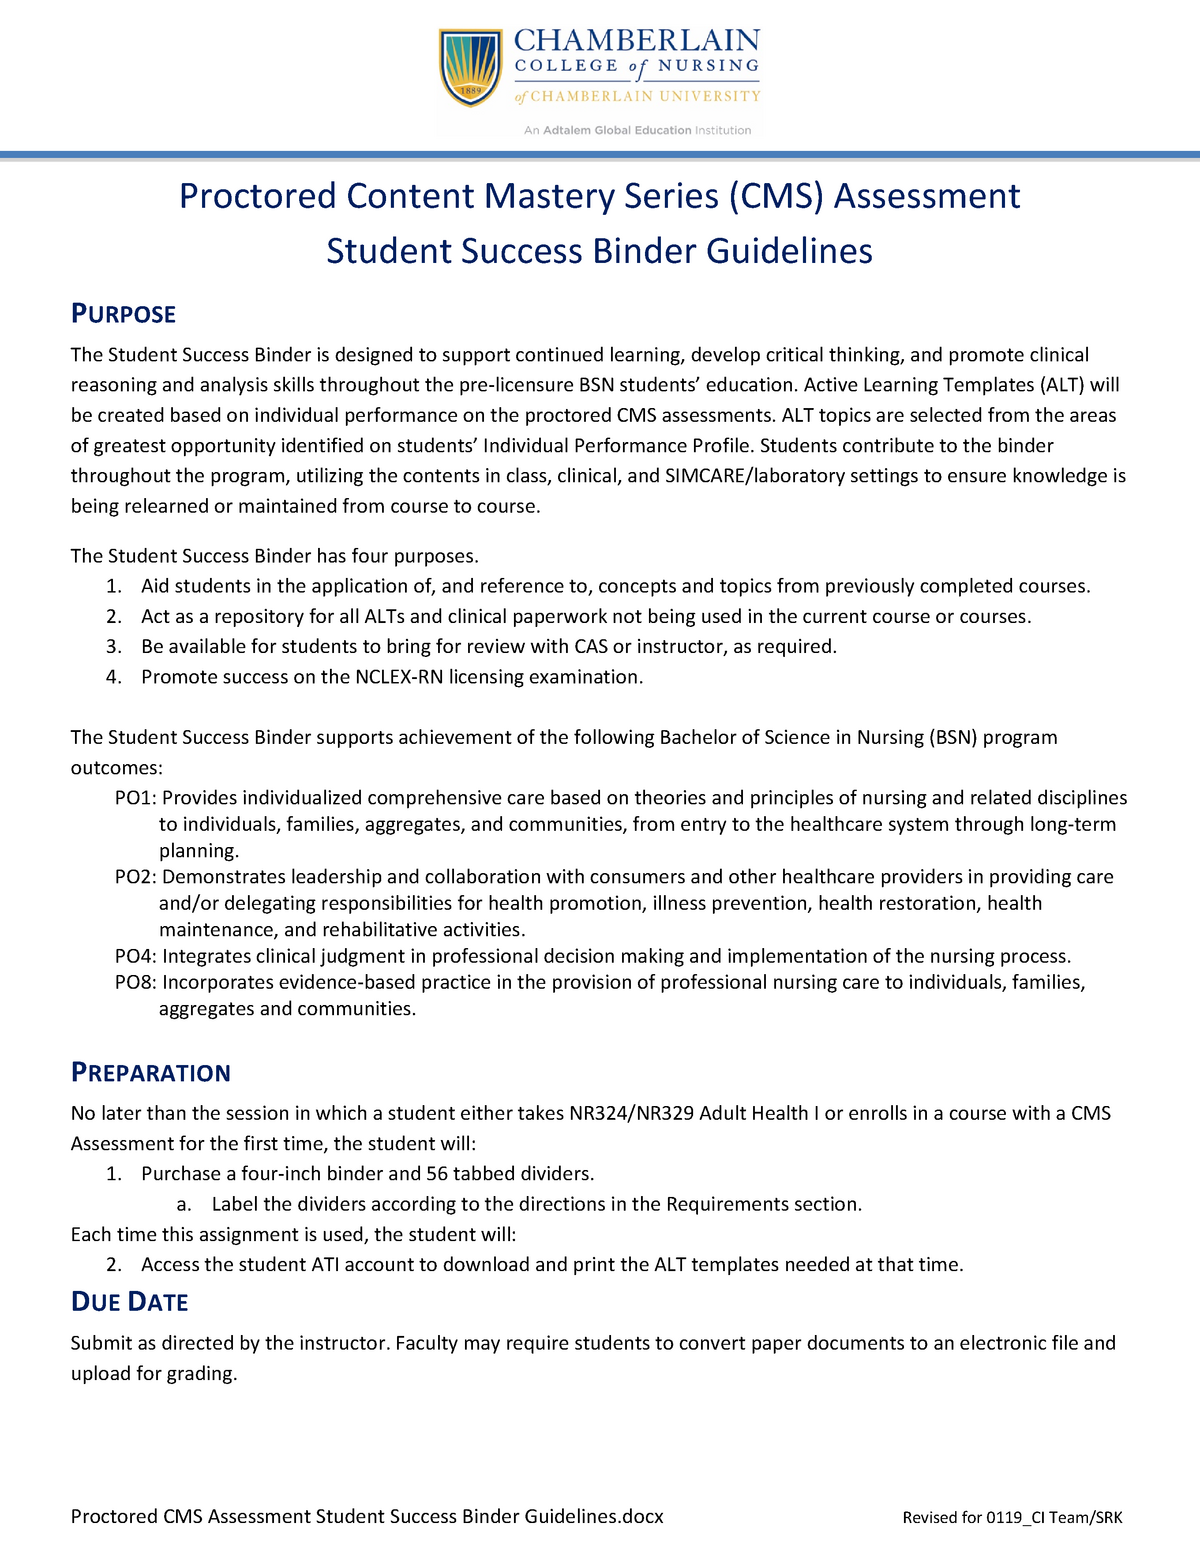 Final Proctored CMS Assessment Remediation Student Success Binder